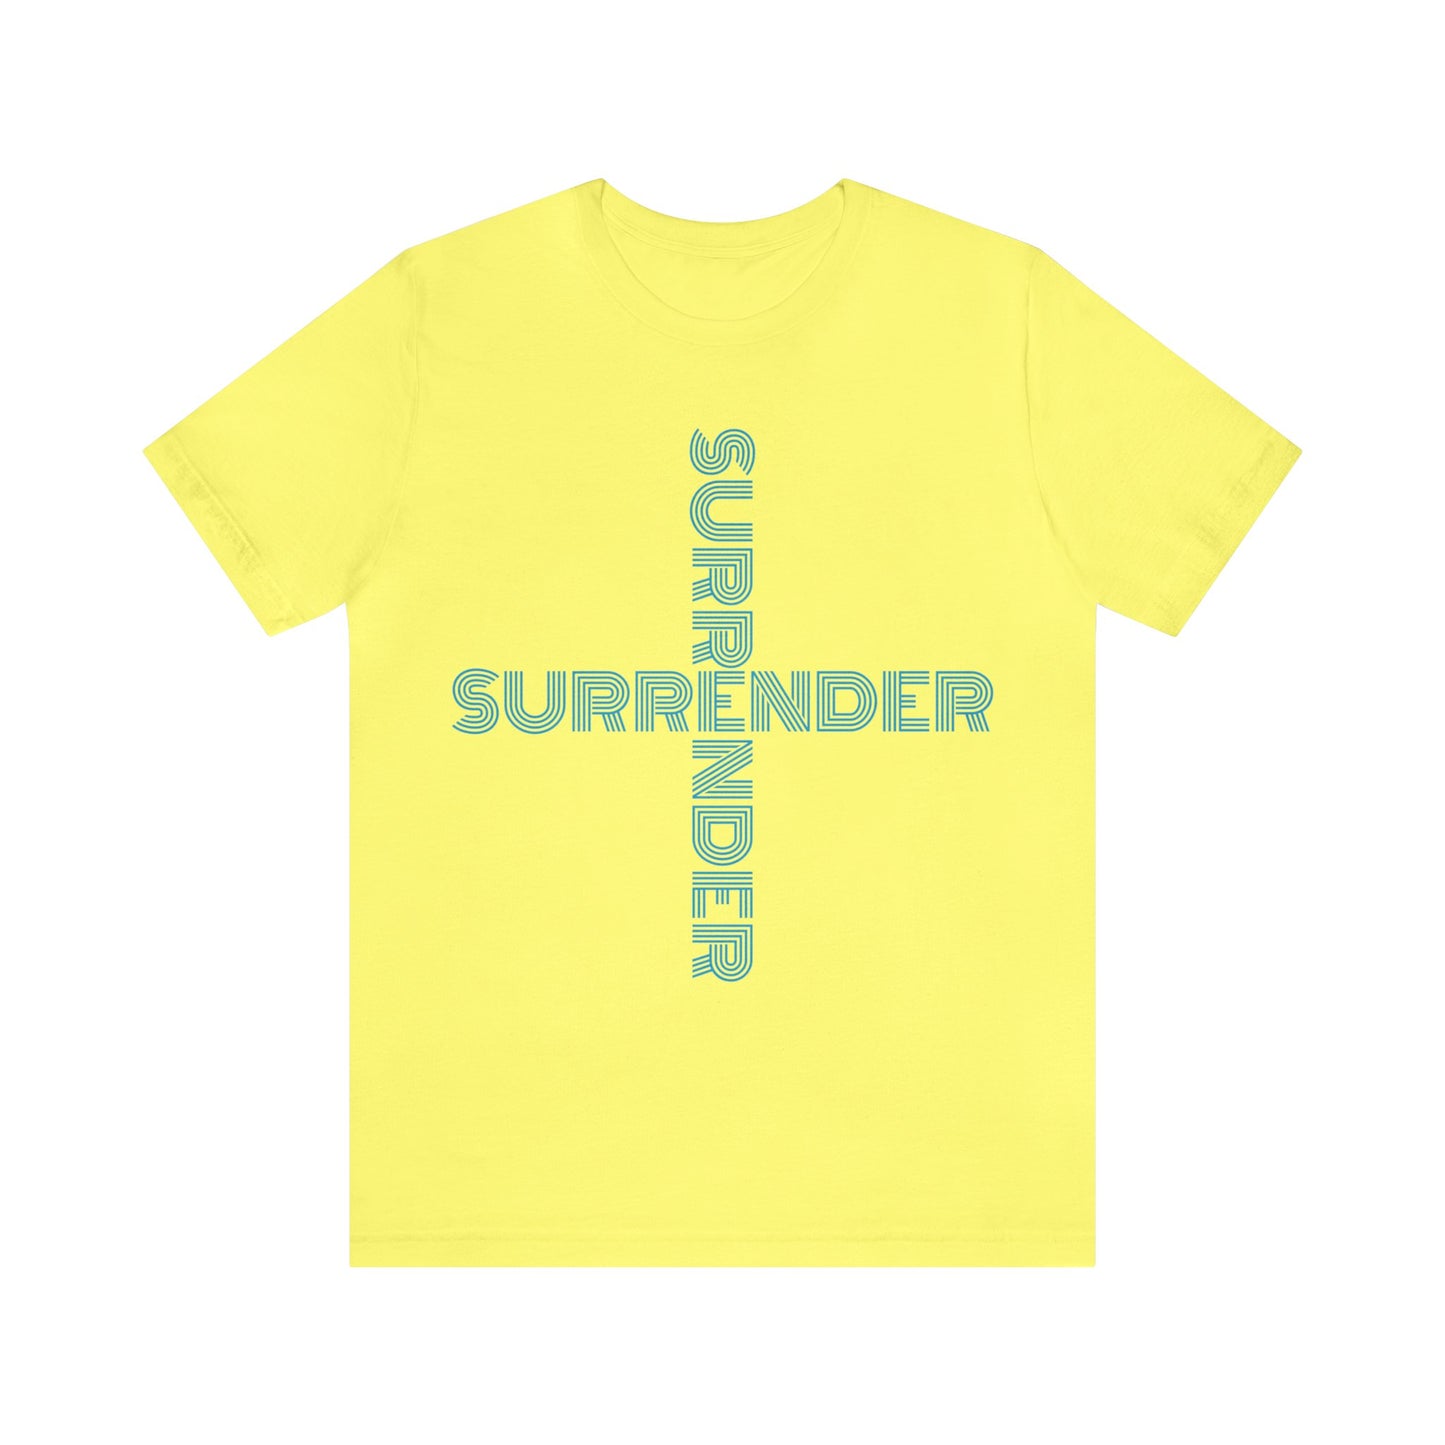 "SURRENDER" Jersey Short Sleeve Tee